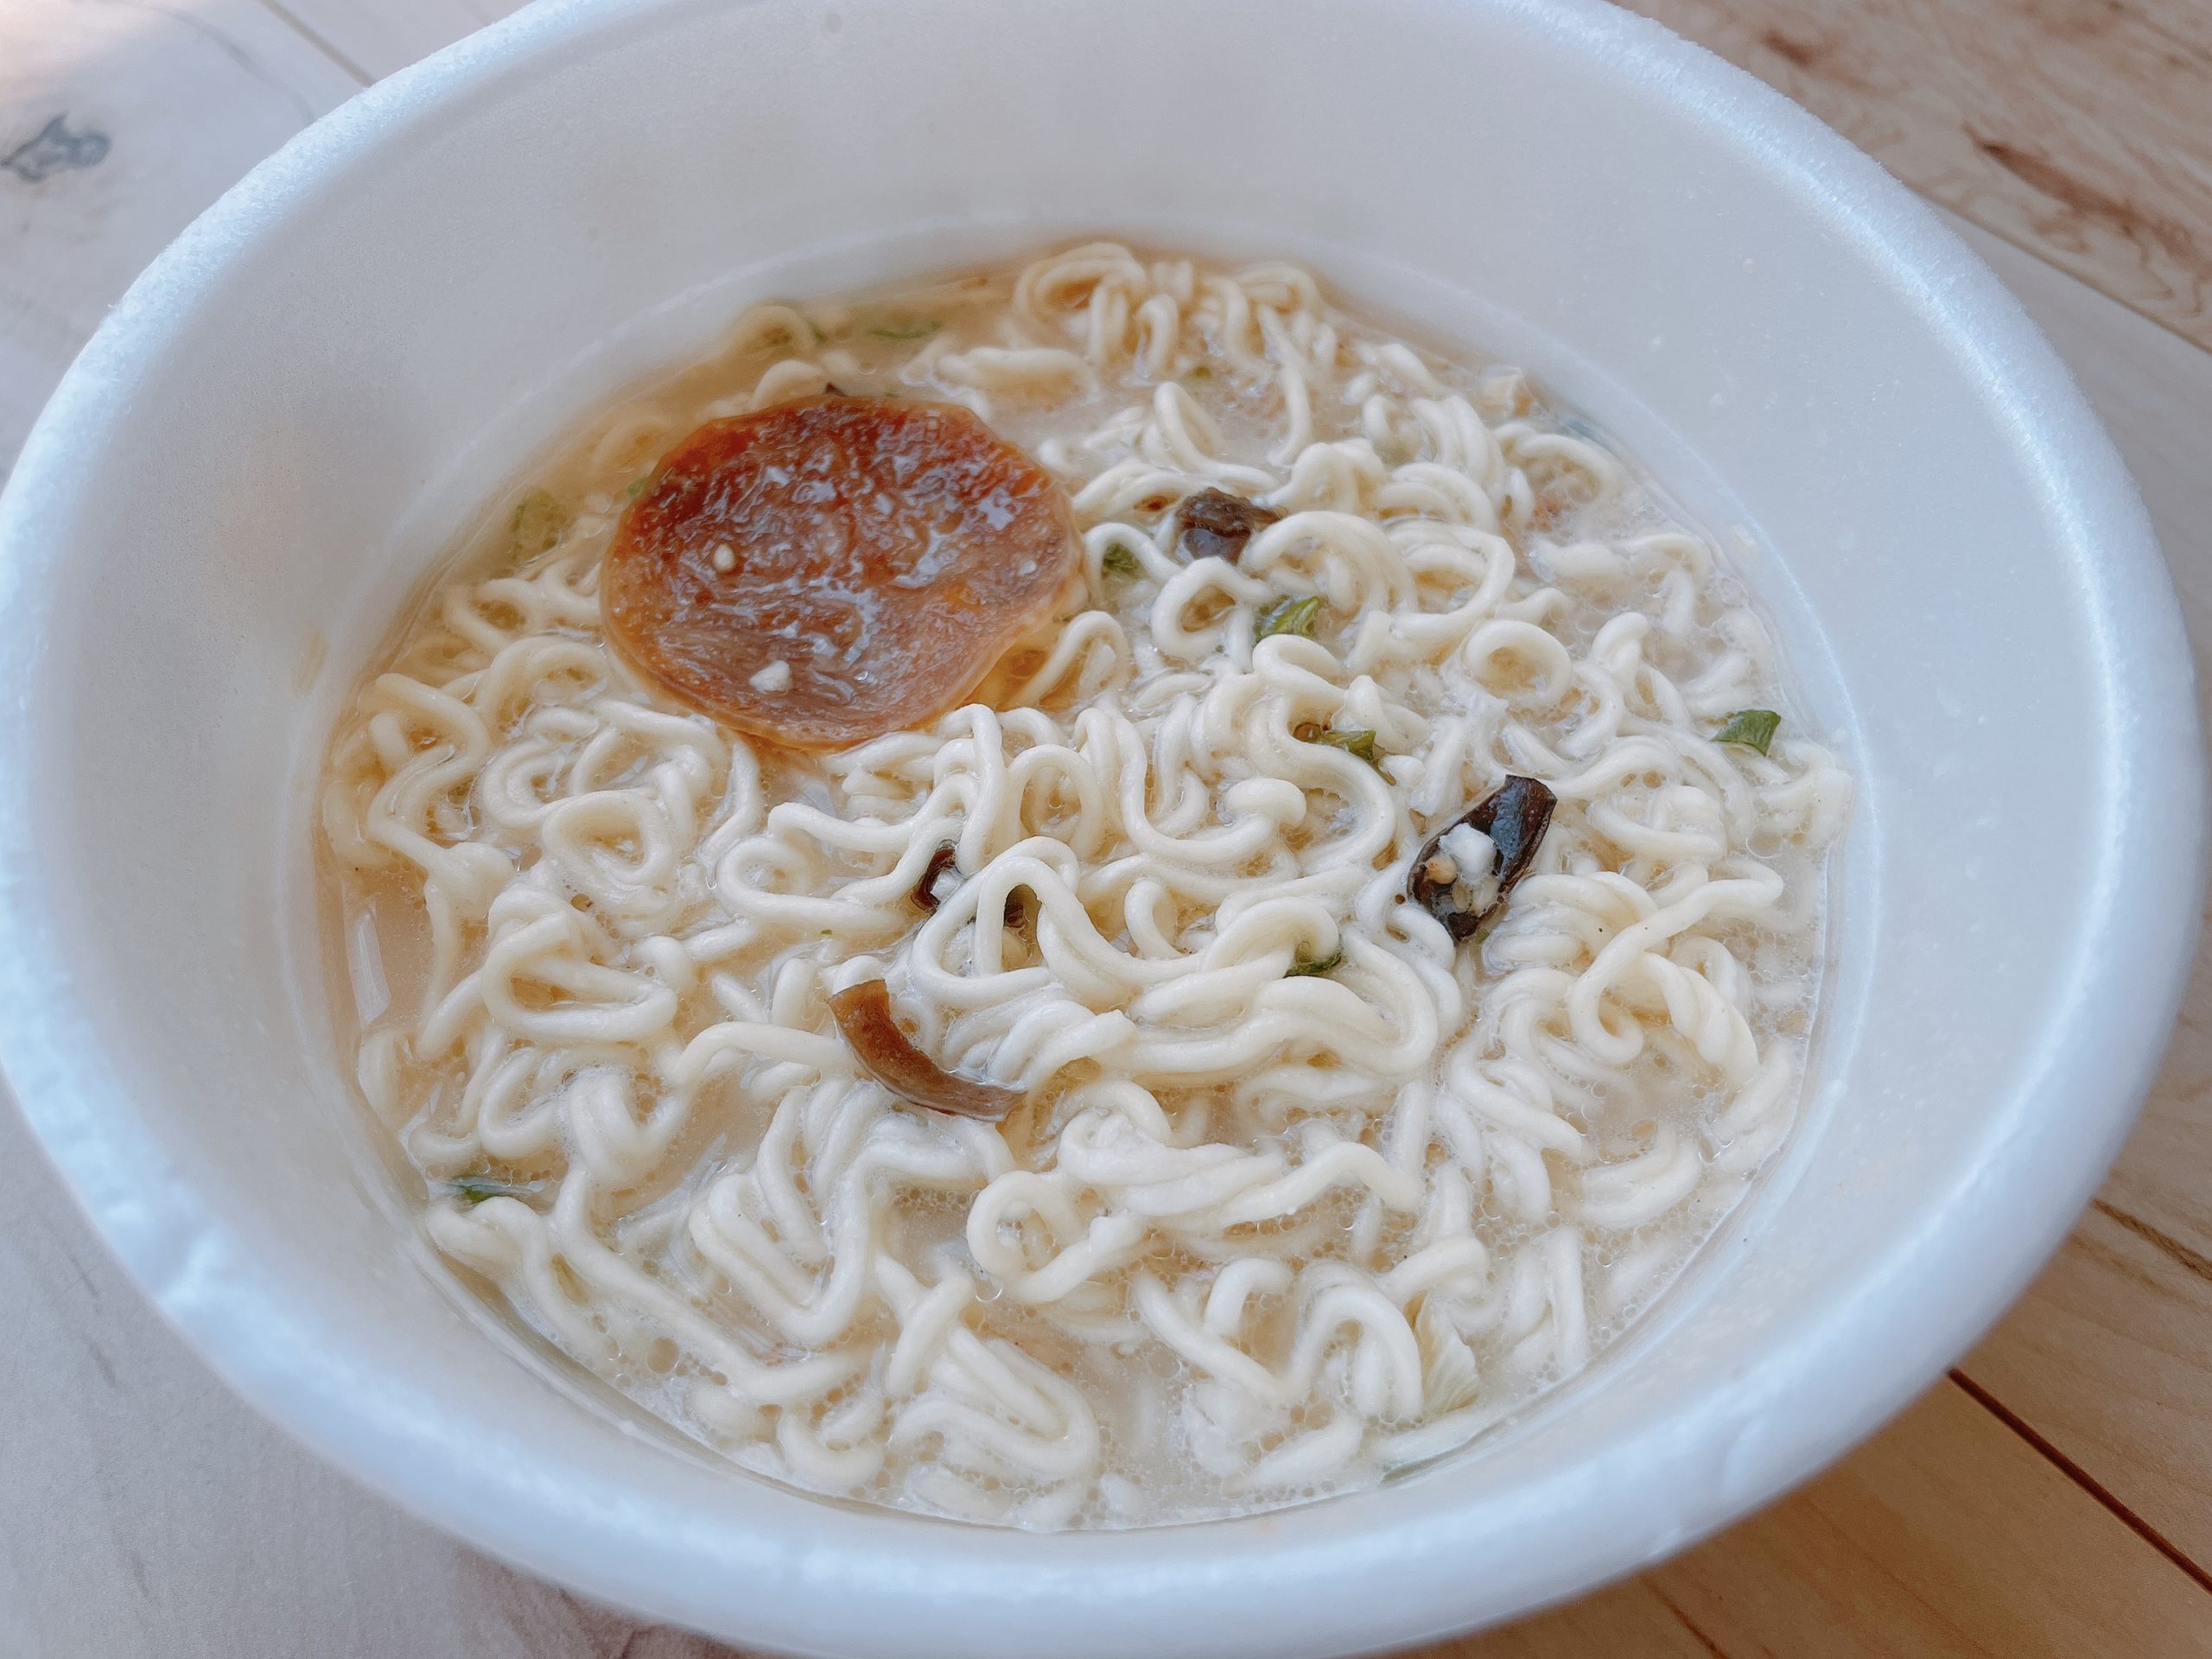 炊き出し豚骨 久留米ラーメン 九州三宝堂のスープは、昔懐かしい味